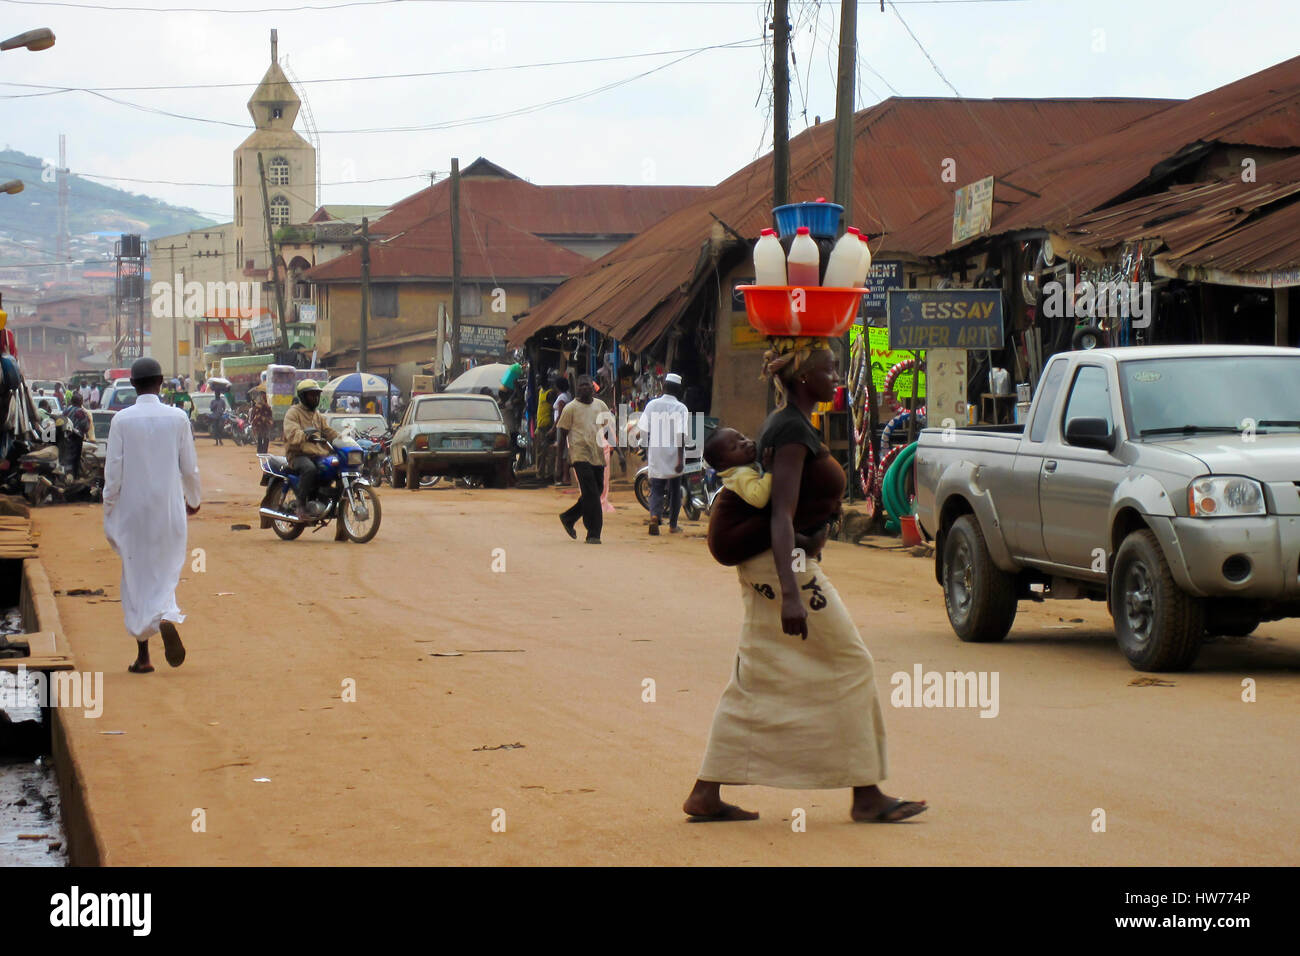 Vue sur la rue avec des gens et des voitures dans la ville de Lagos, la plus grande ville au Nigeria et le continent africain. Banque D'Images